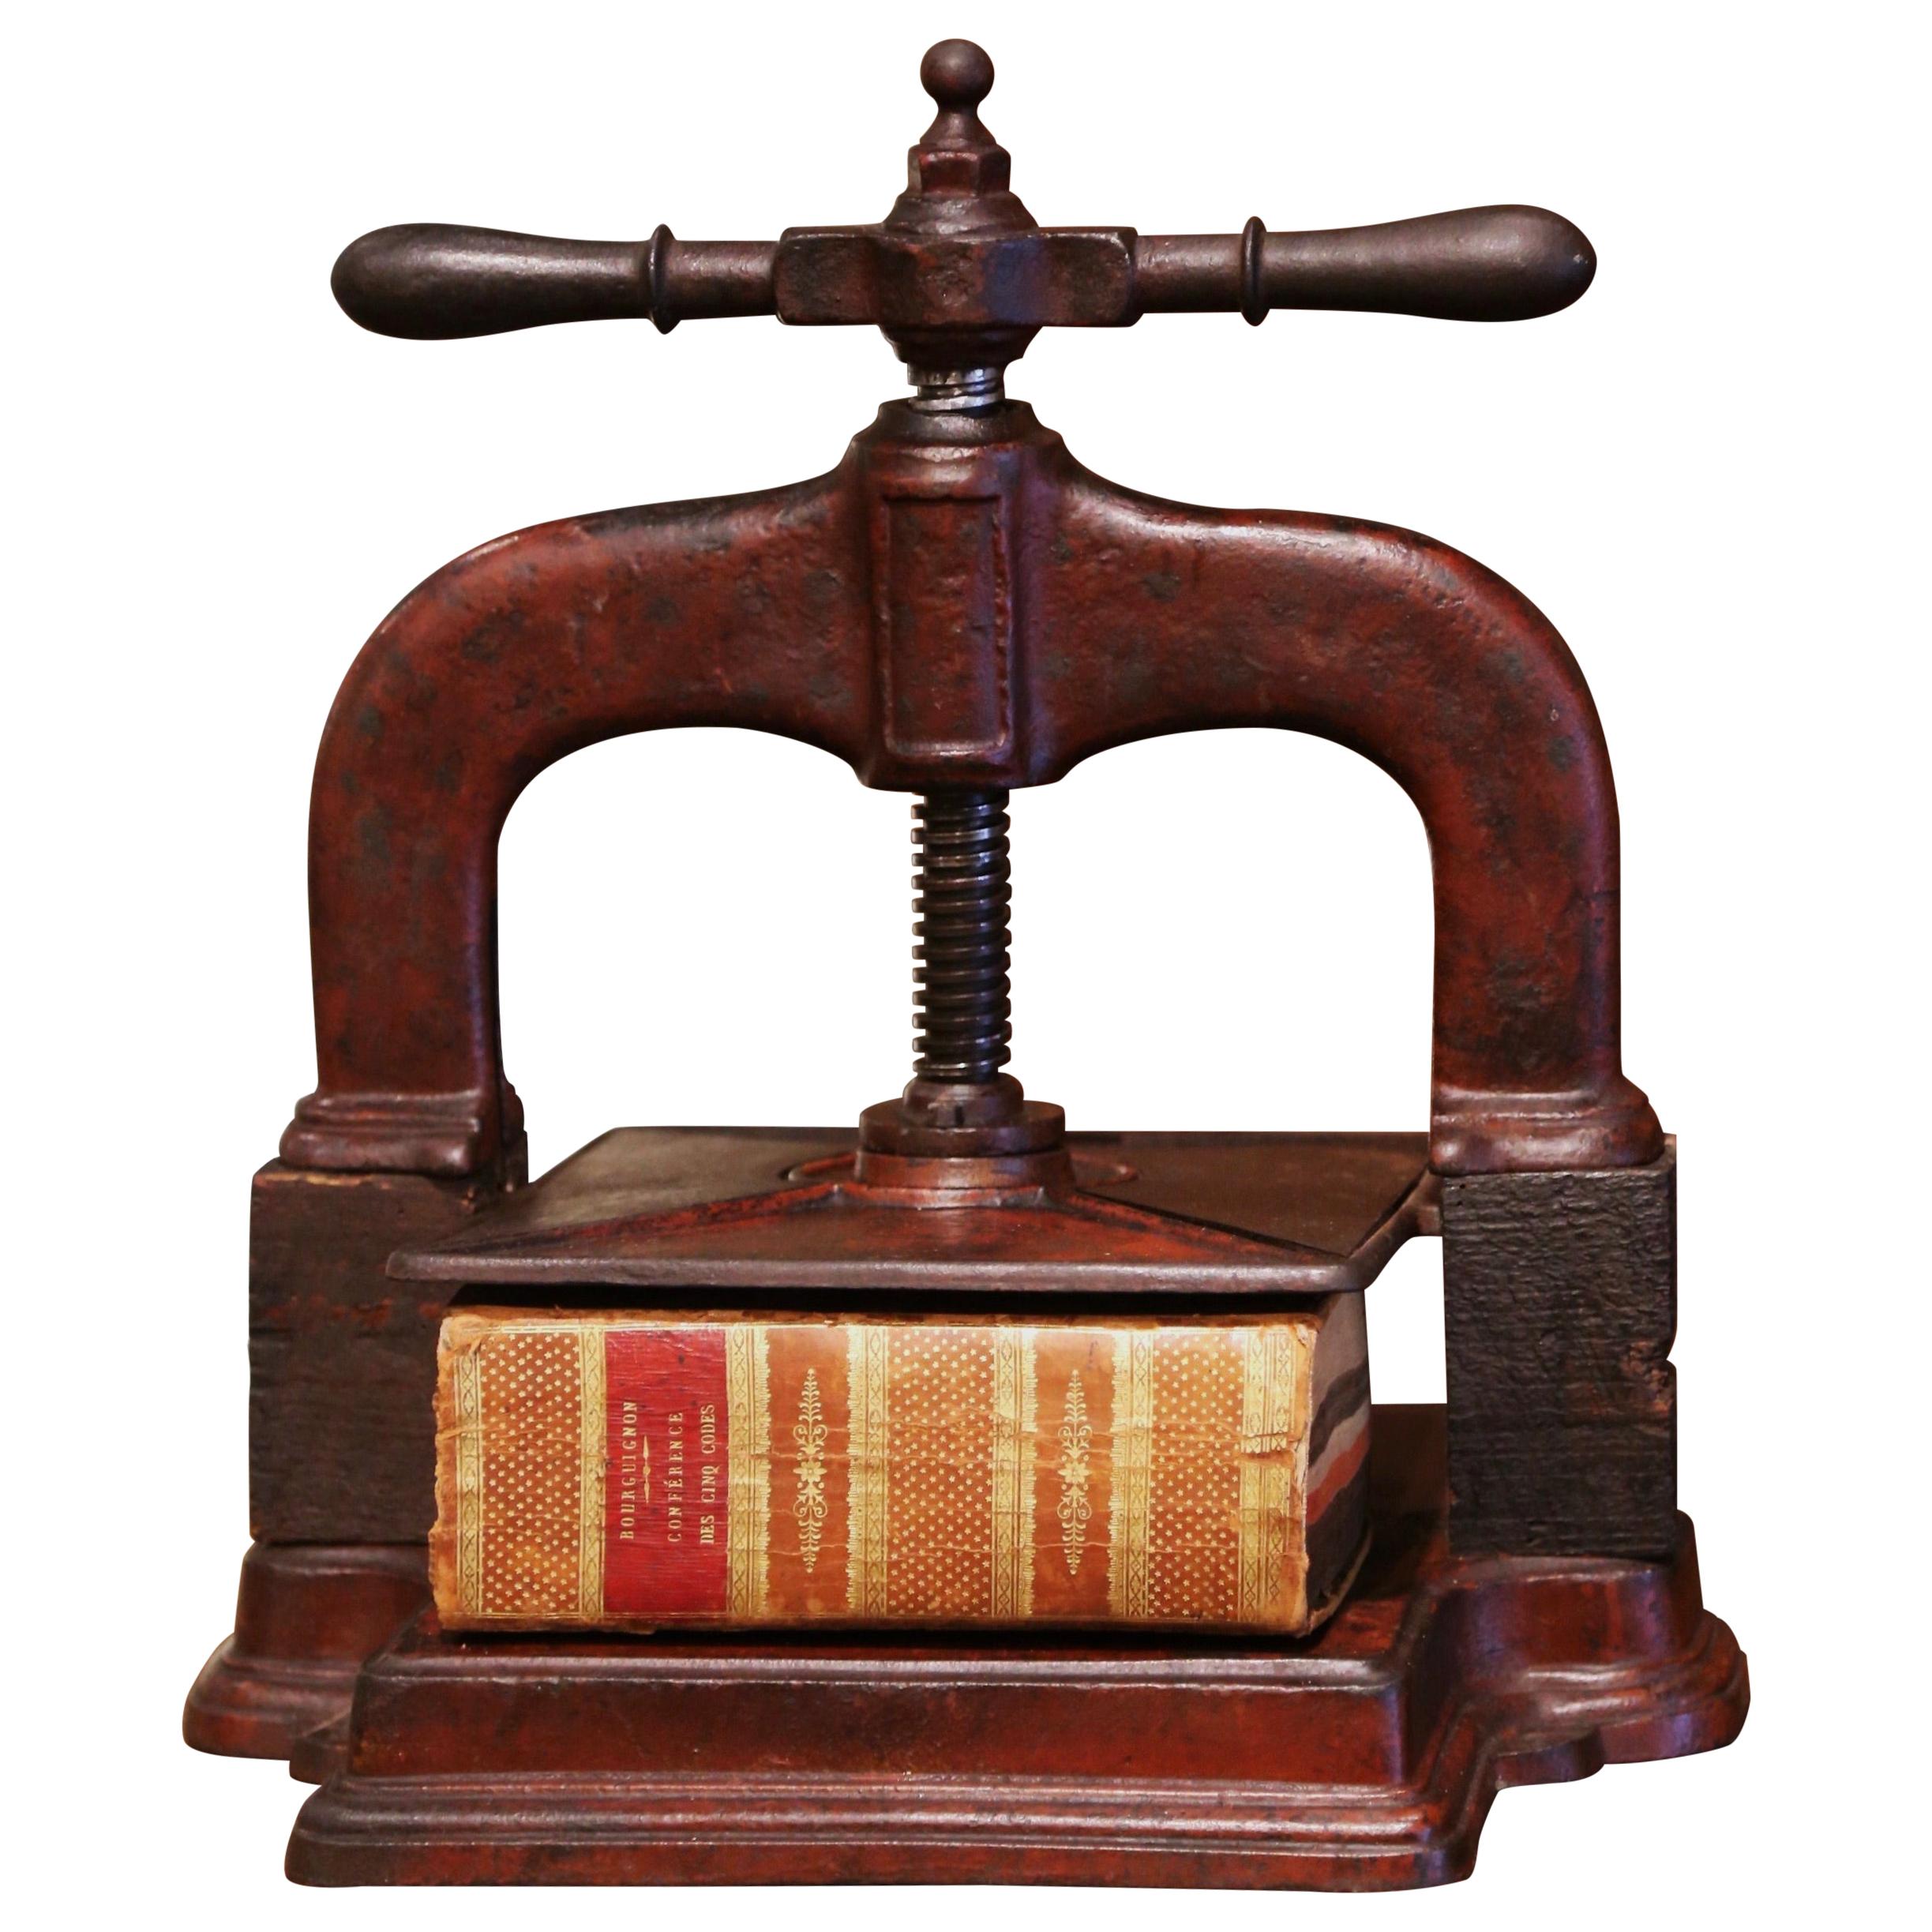 Presse à reliure de livres en fer forgé peint en rouge rouille du 19ème siècle avec livre